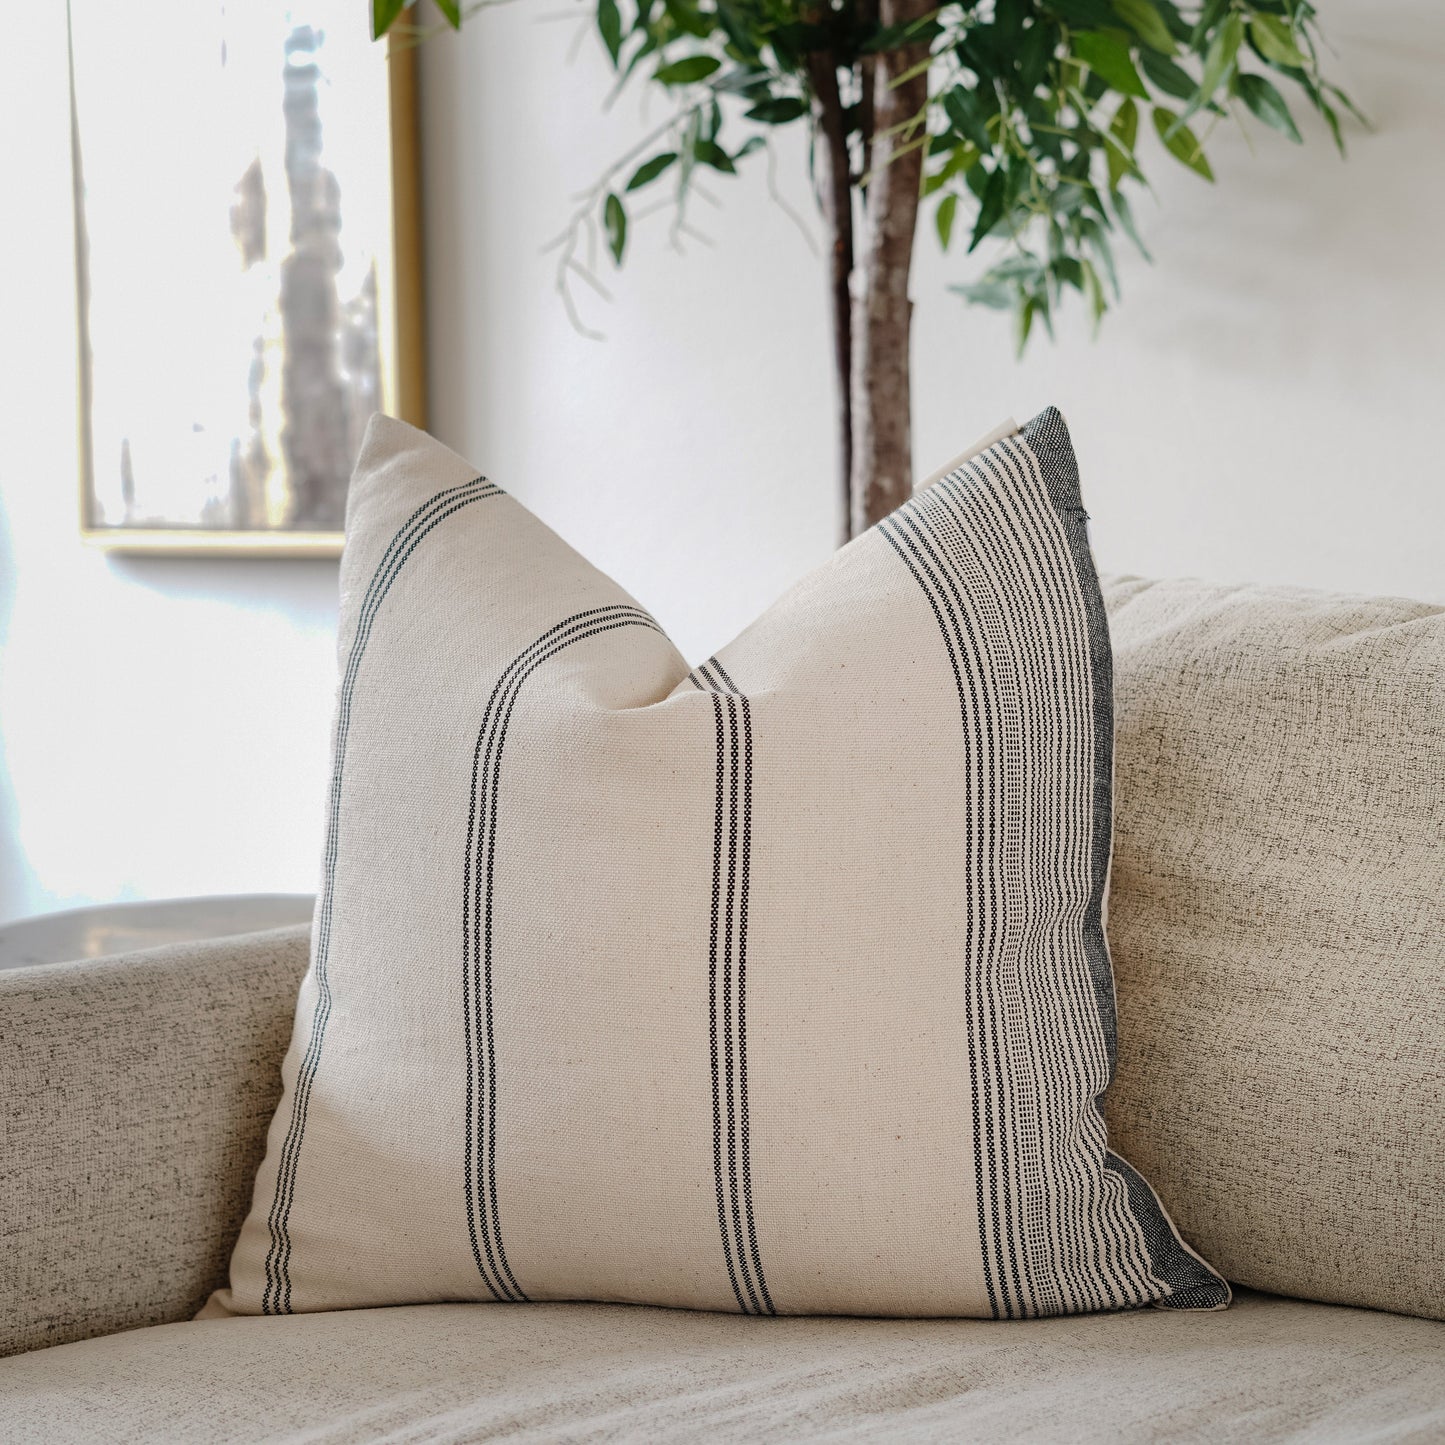 RuffledThread Home & Living > Home Décor > Decorative Pillows ENIIYI- Woven Cotton Throw Pillow Cover